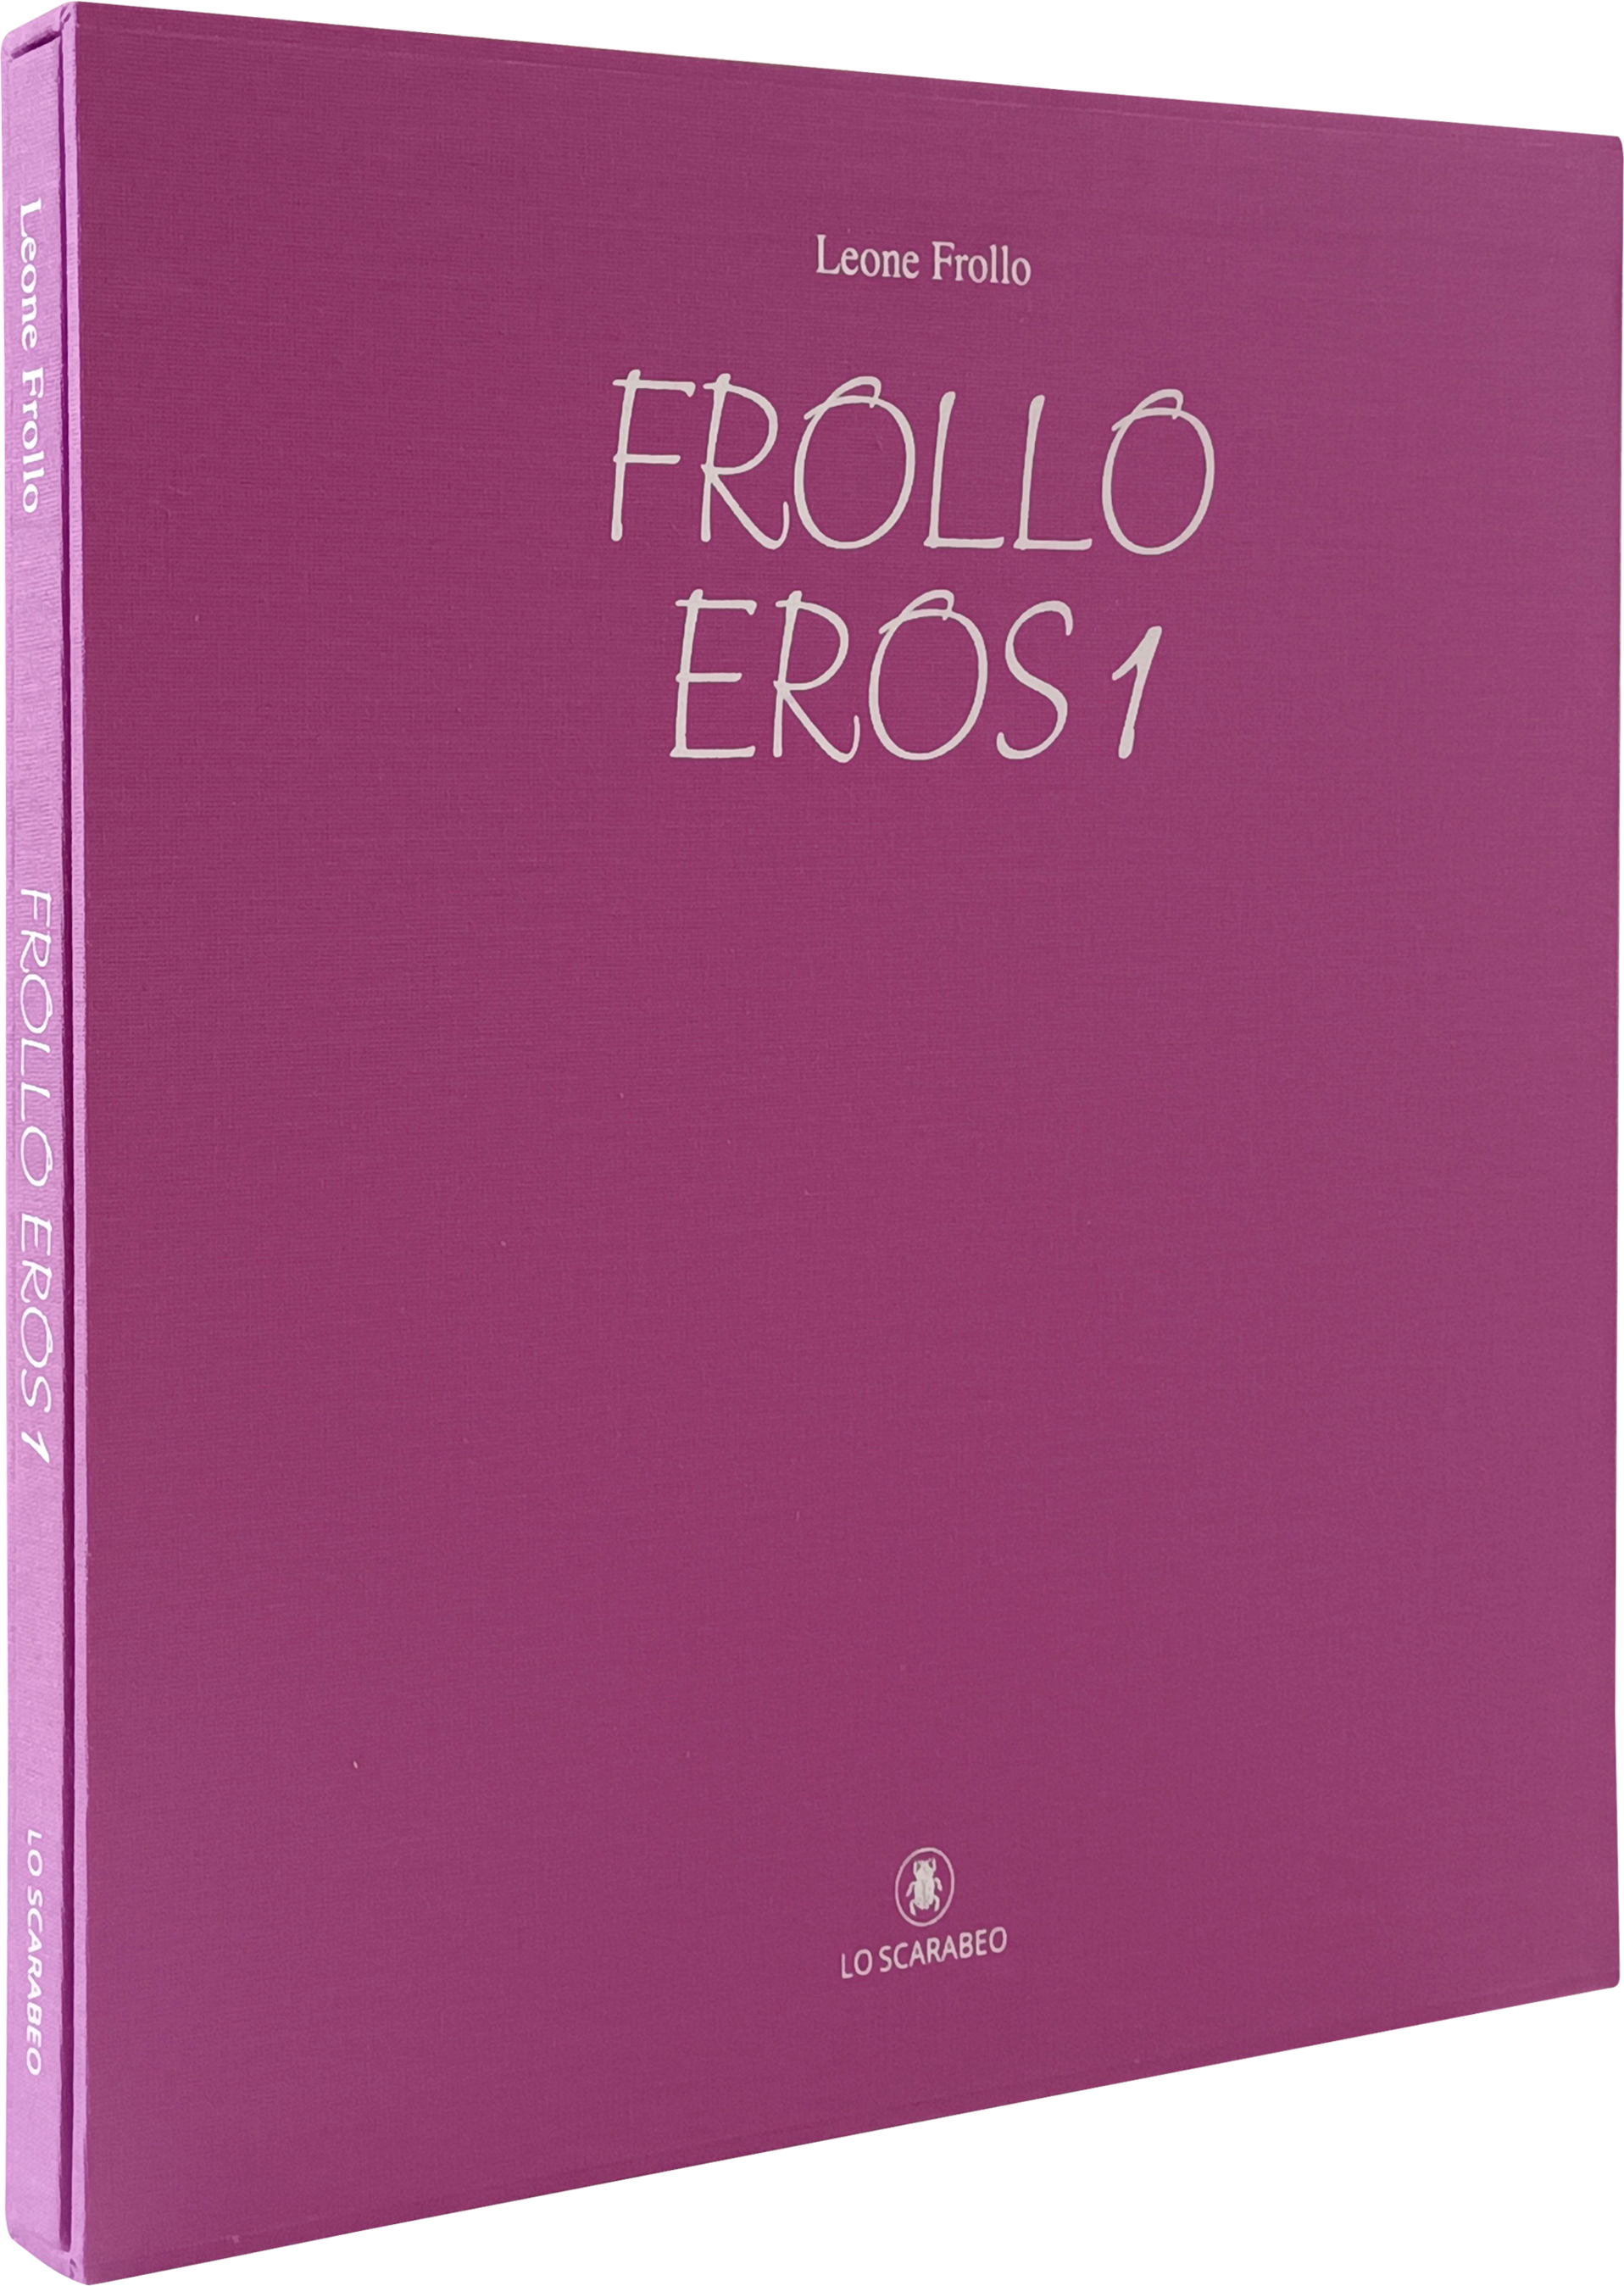 Frollo - Eros 1 - Edizione Deluxe